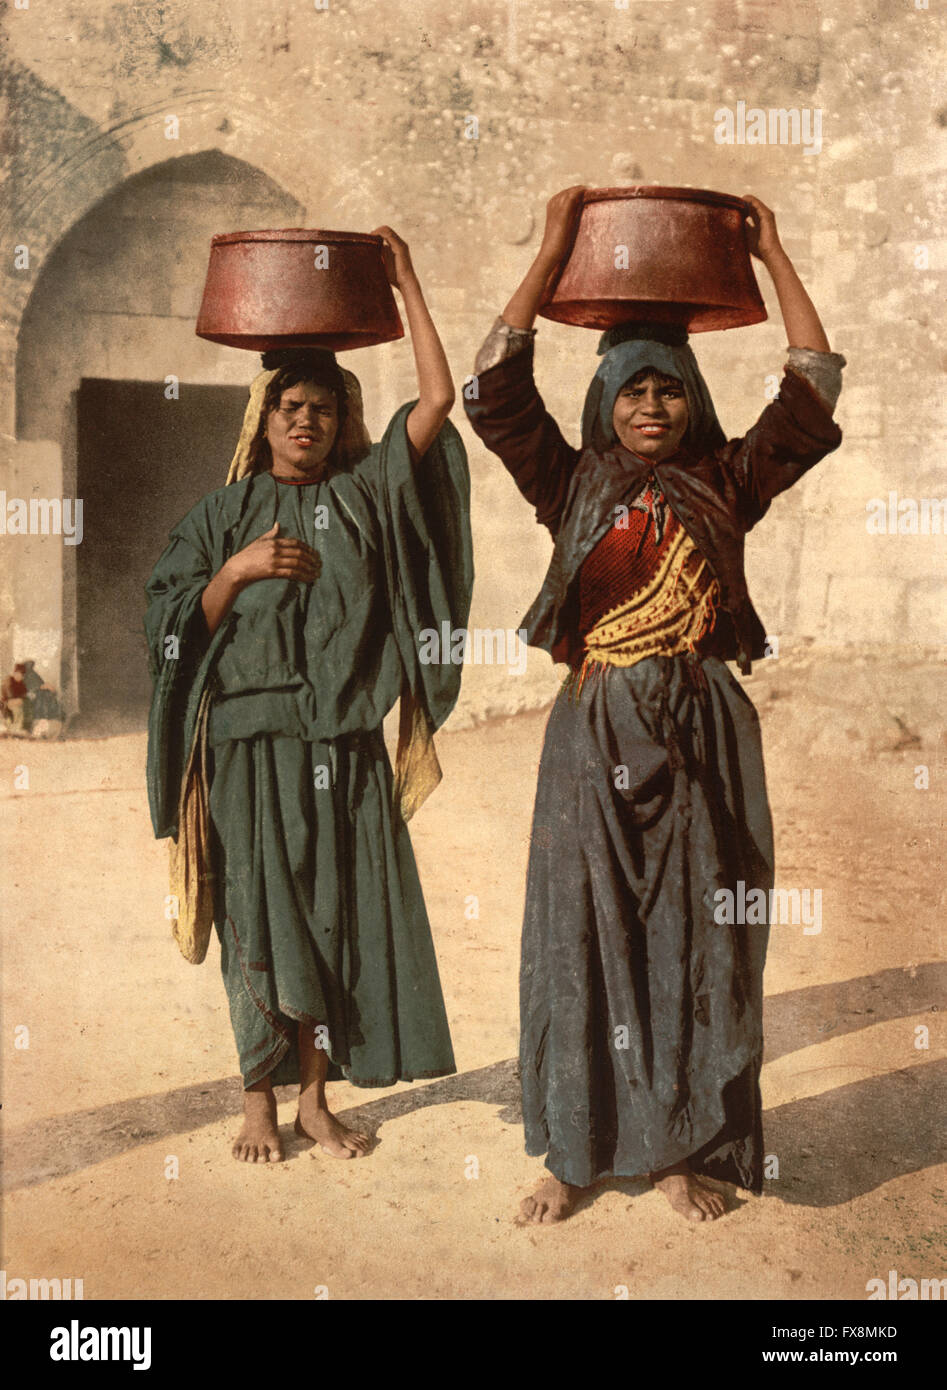 Vendeur de lait de Siloé, Terre sainte, Jérusalem, impression Photochrome, vers 1900 Banque D'Images